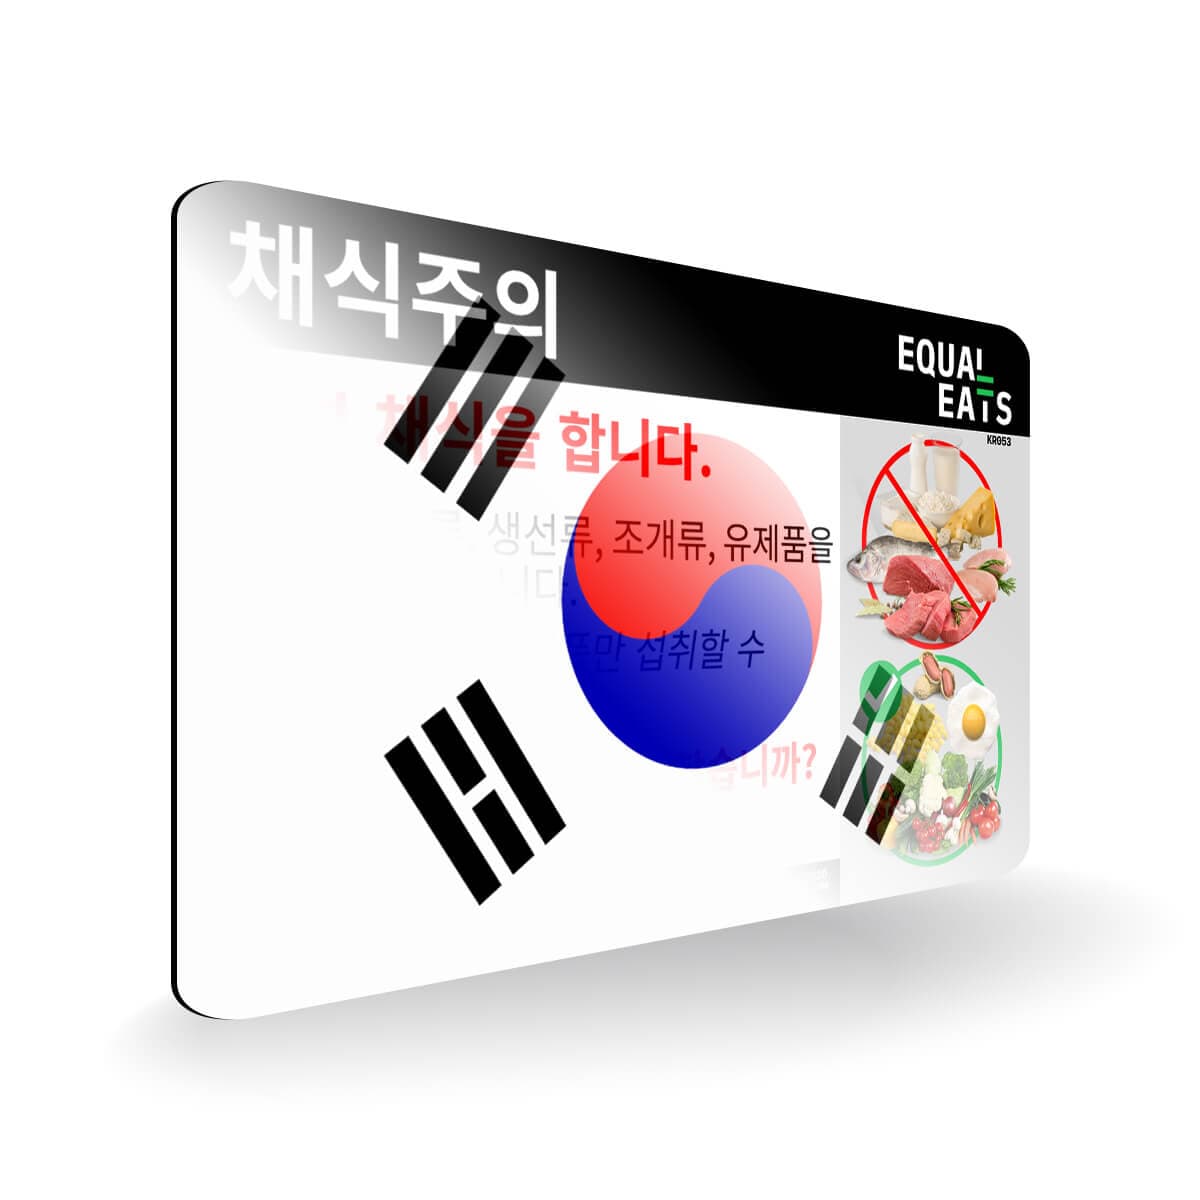 Ovo Vegetarian in Korean. Card for Vegetarian in Korea